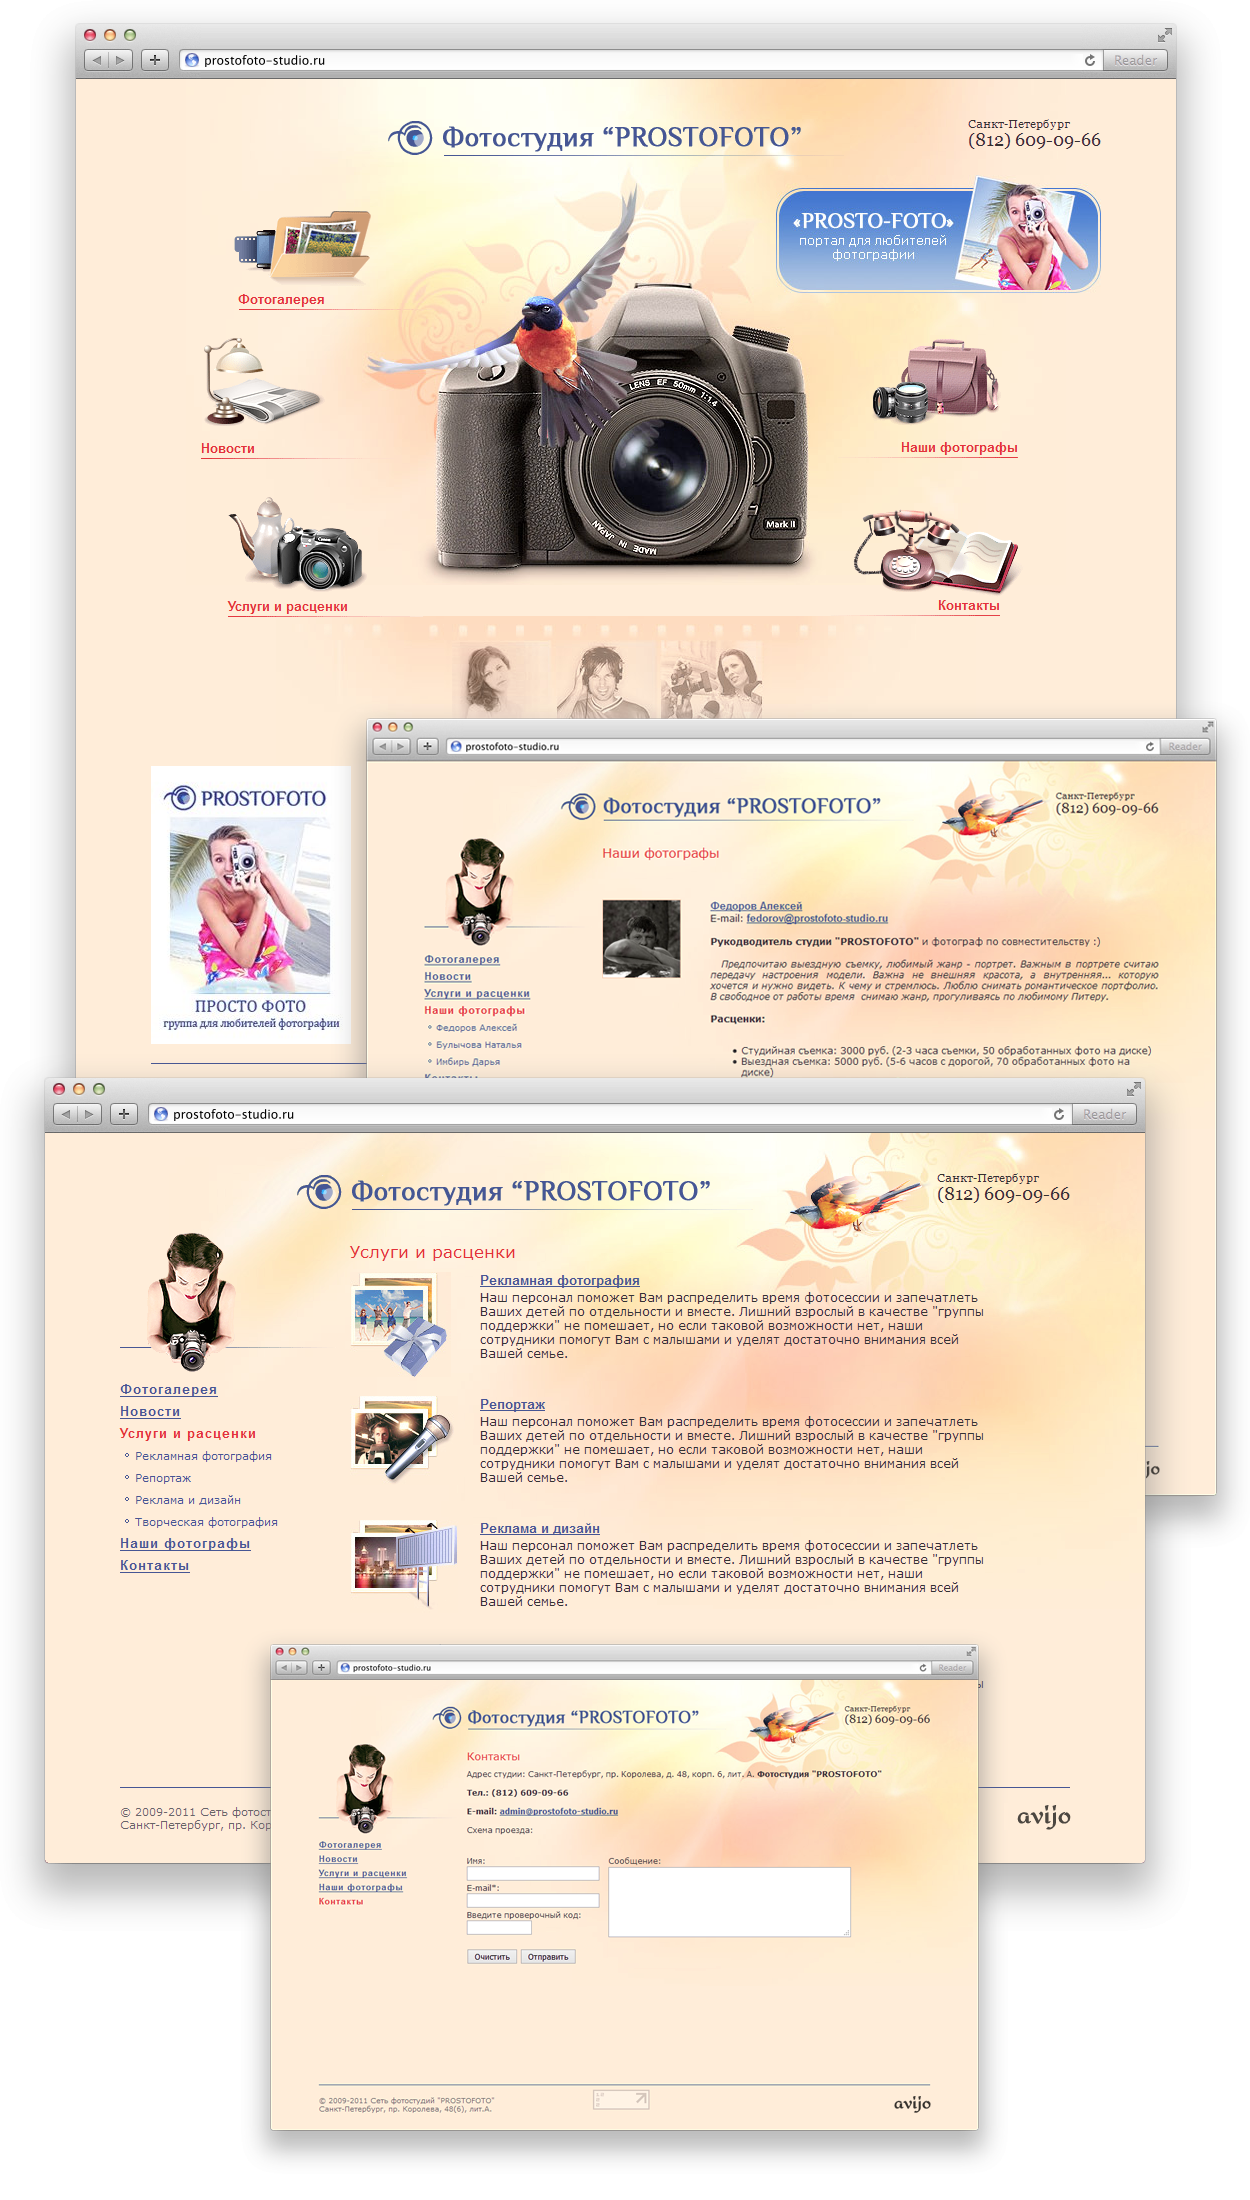 Разработка сайта фотостудии «Prostofoto» — РФ. Авторская разработка сайтов по индивидуальному заказу для любых видов бизнеса. Персональные и корпоративные сайты, интернет-магазины и лендинги под ключ